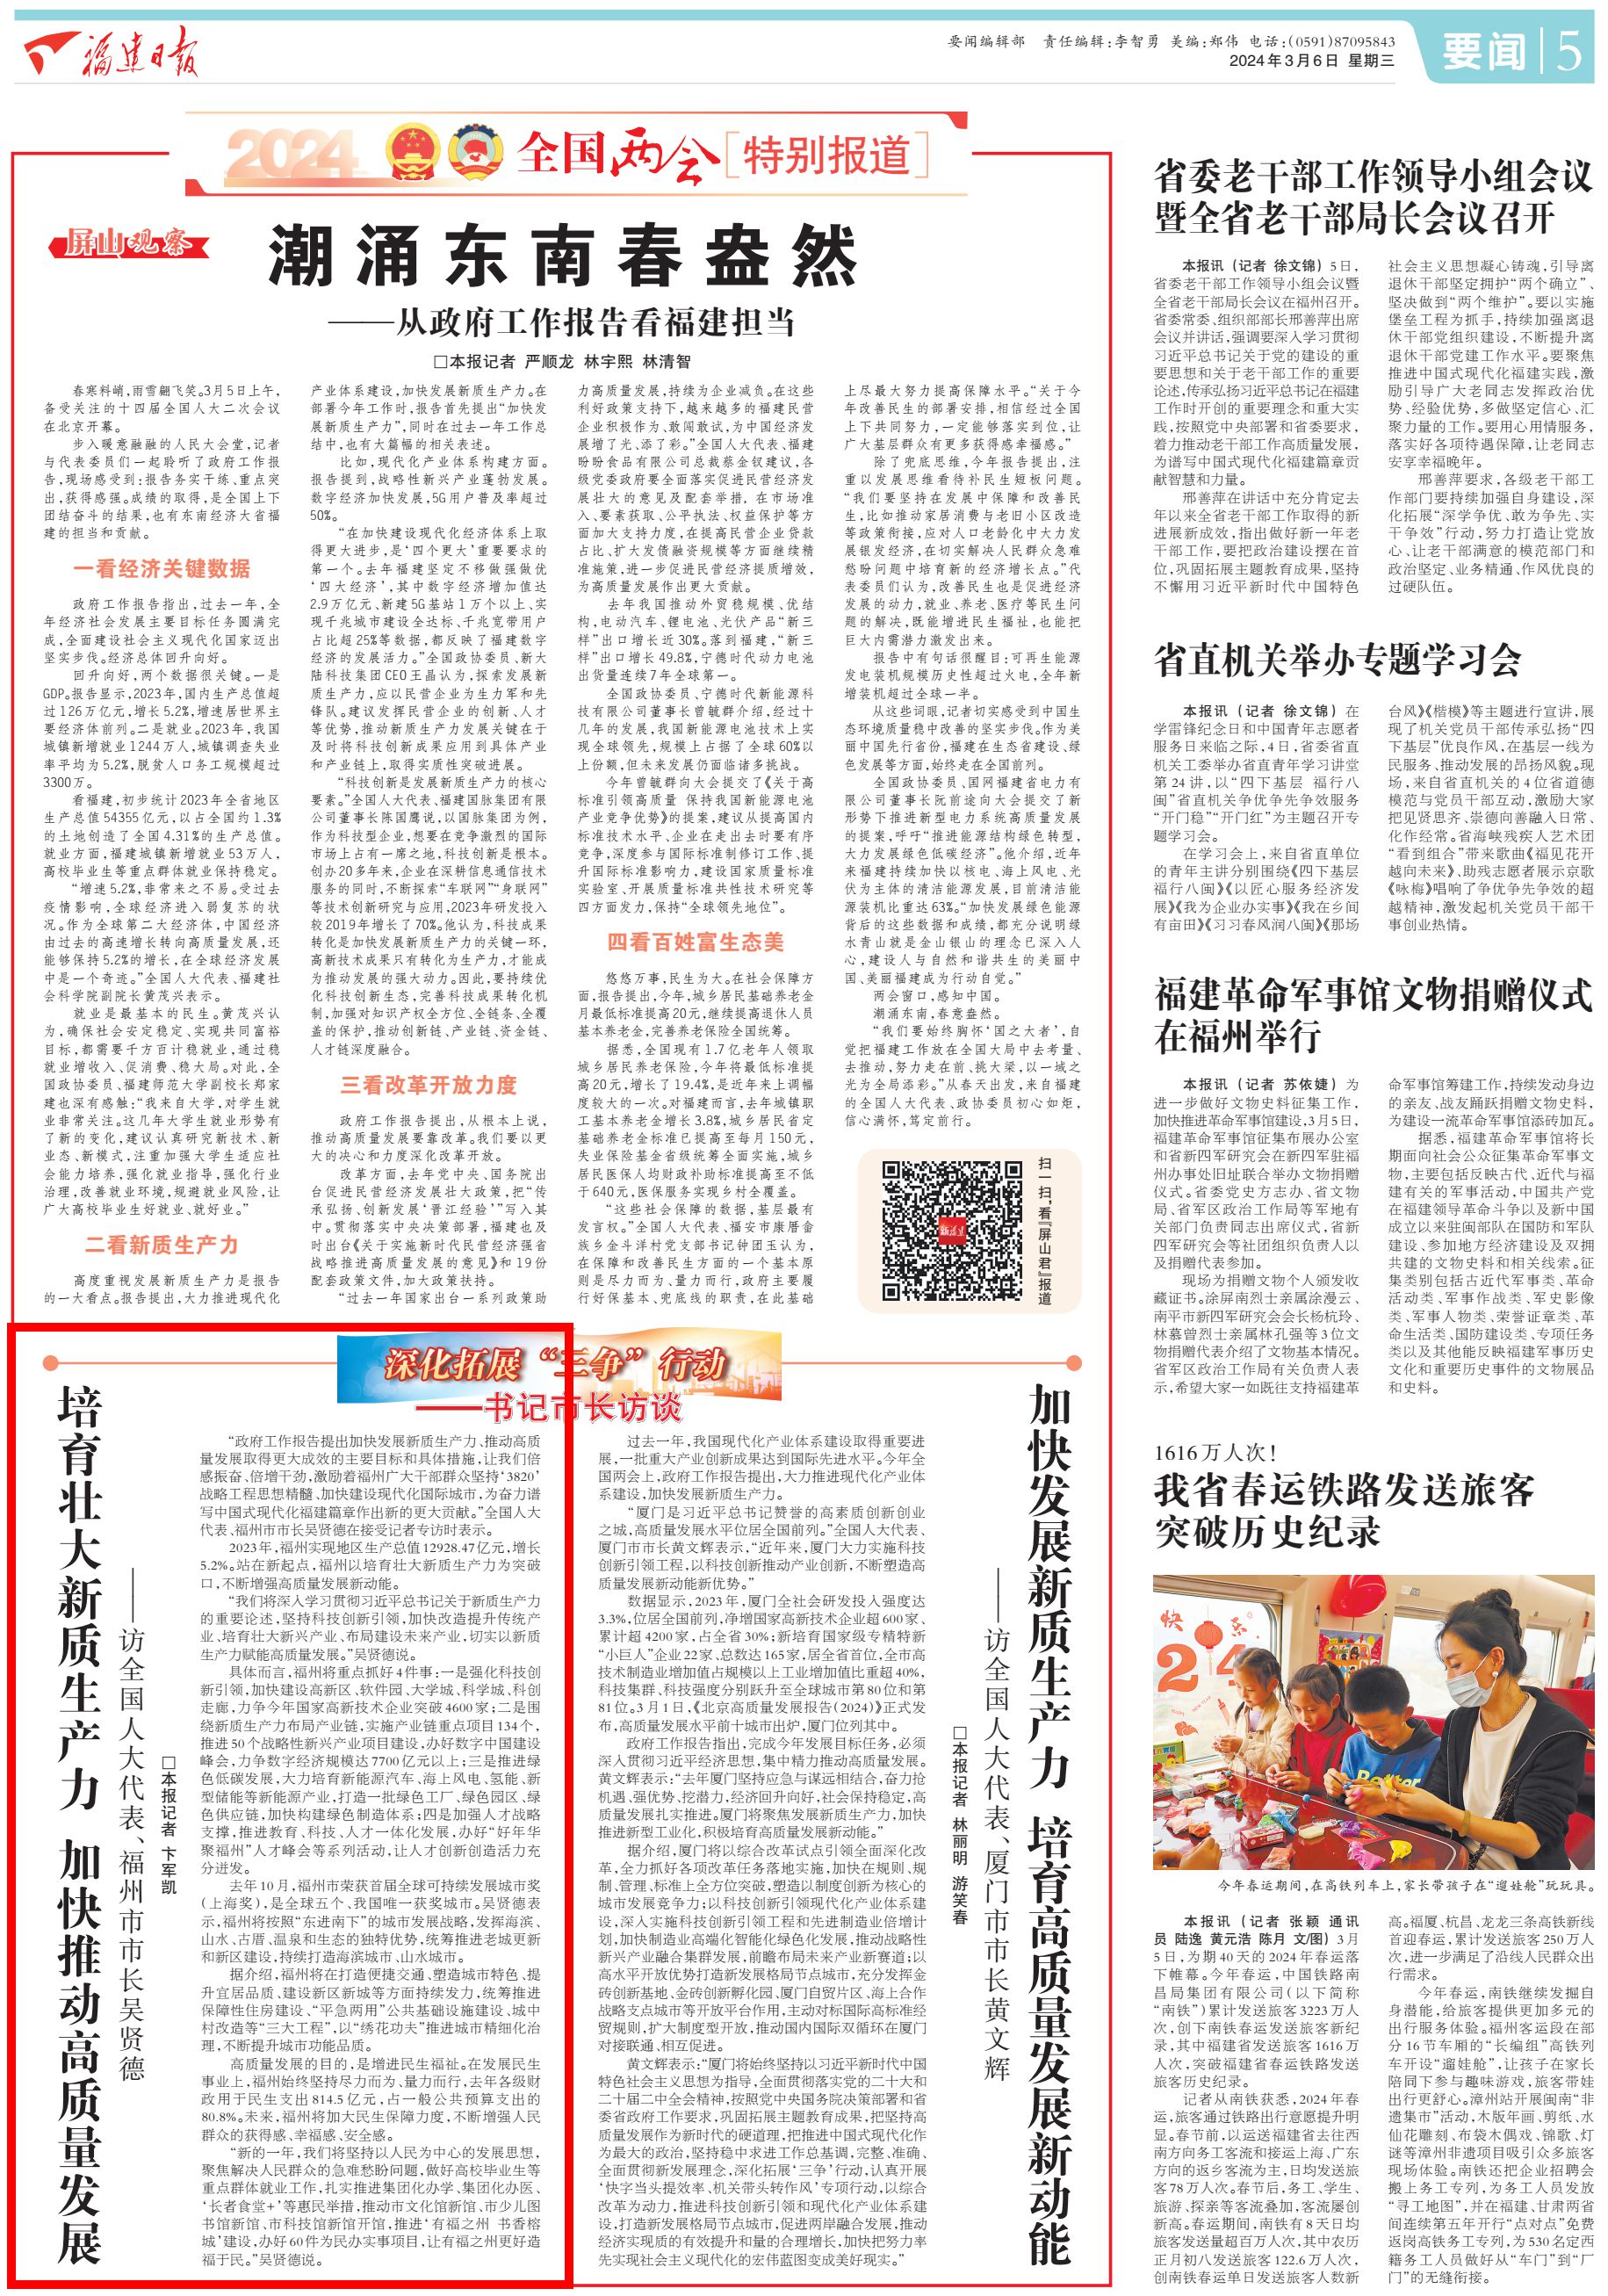 福建日报专访全国人大代表、福州市市长吴贤德